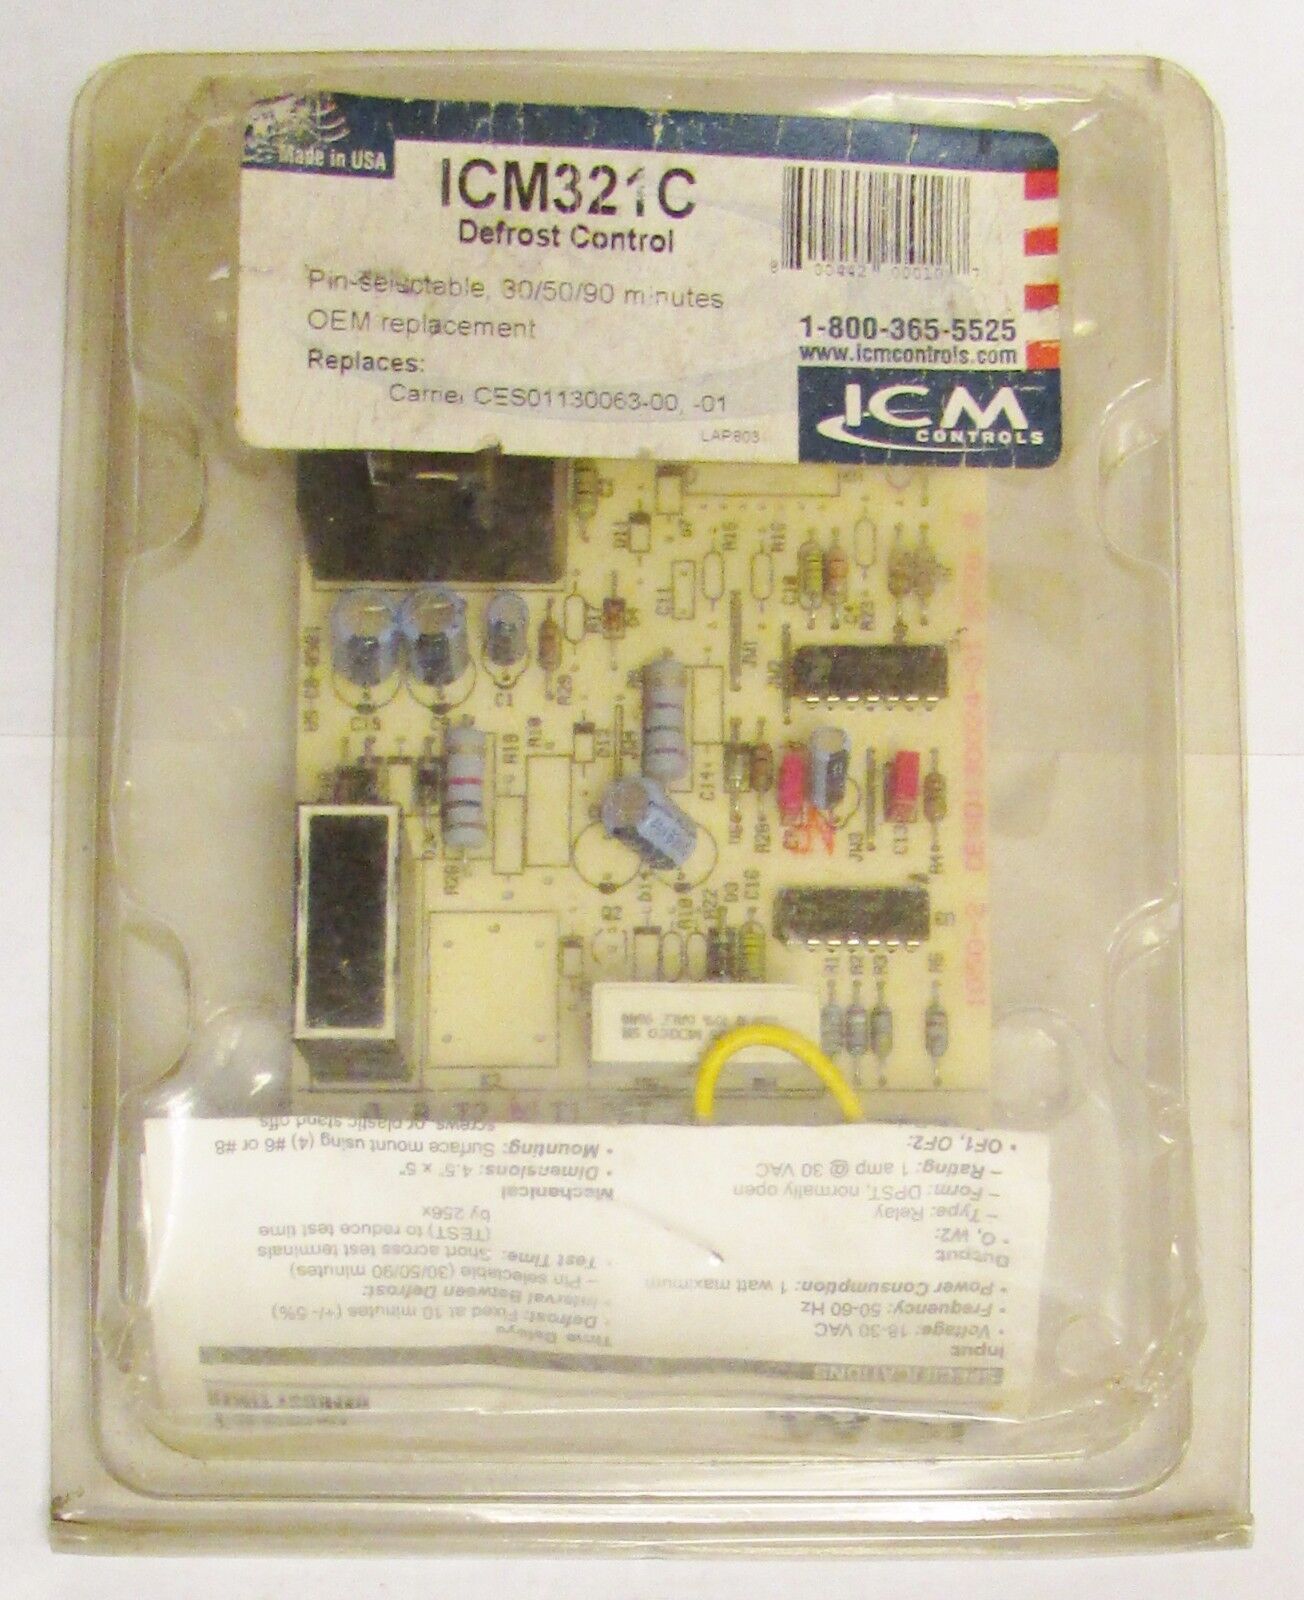 ICM CONTROLS ICM321C Defrost Control PC Module Carrier CES01130063 00 01